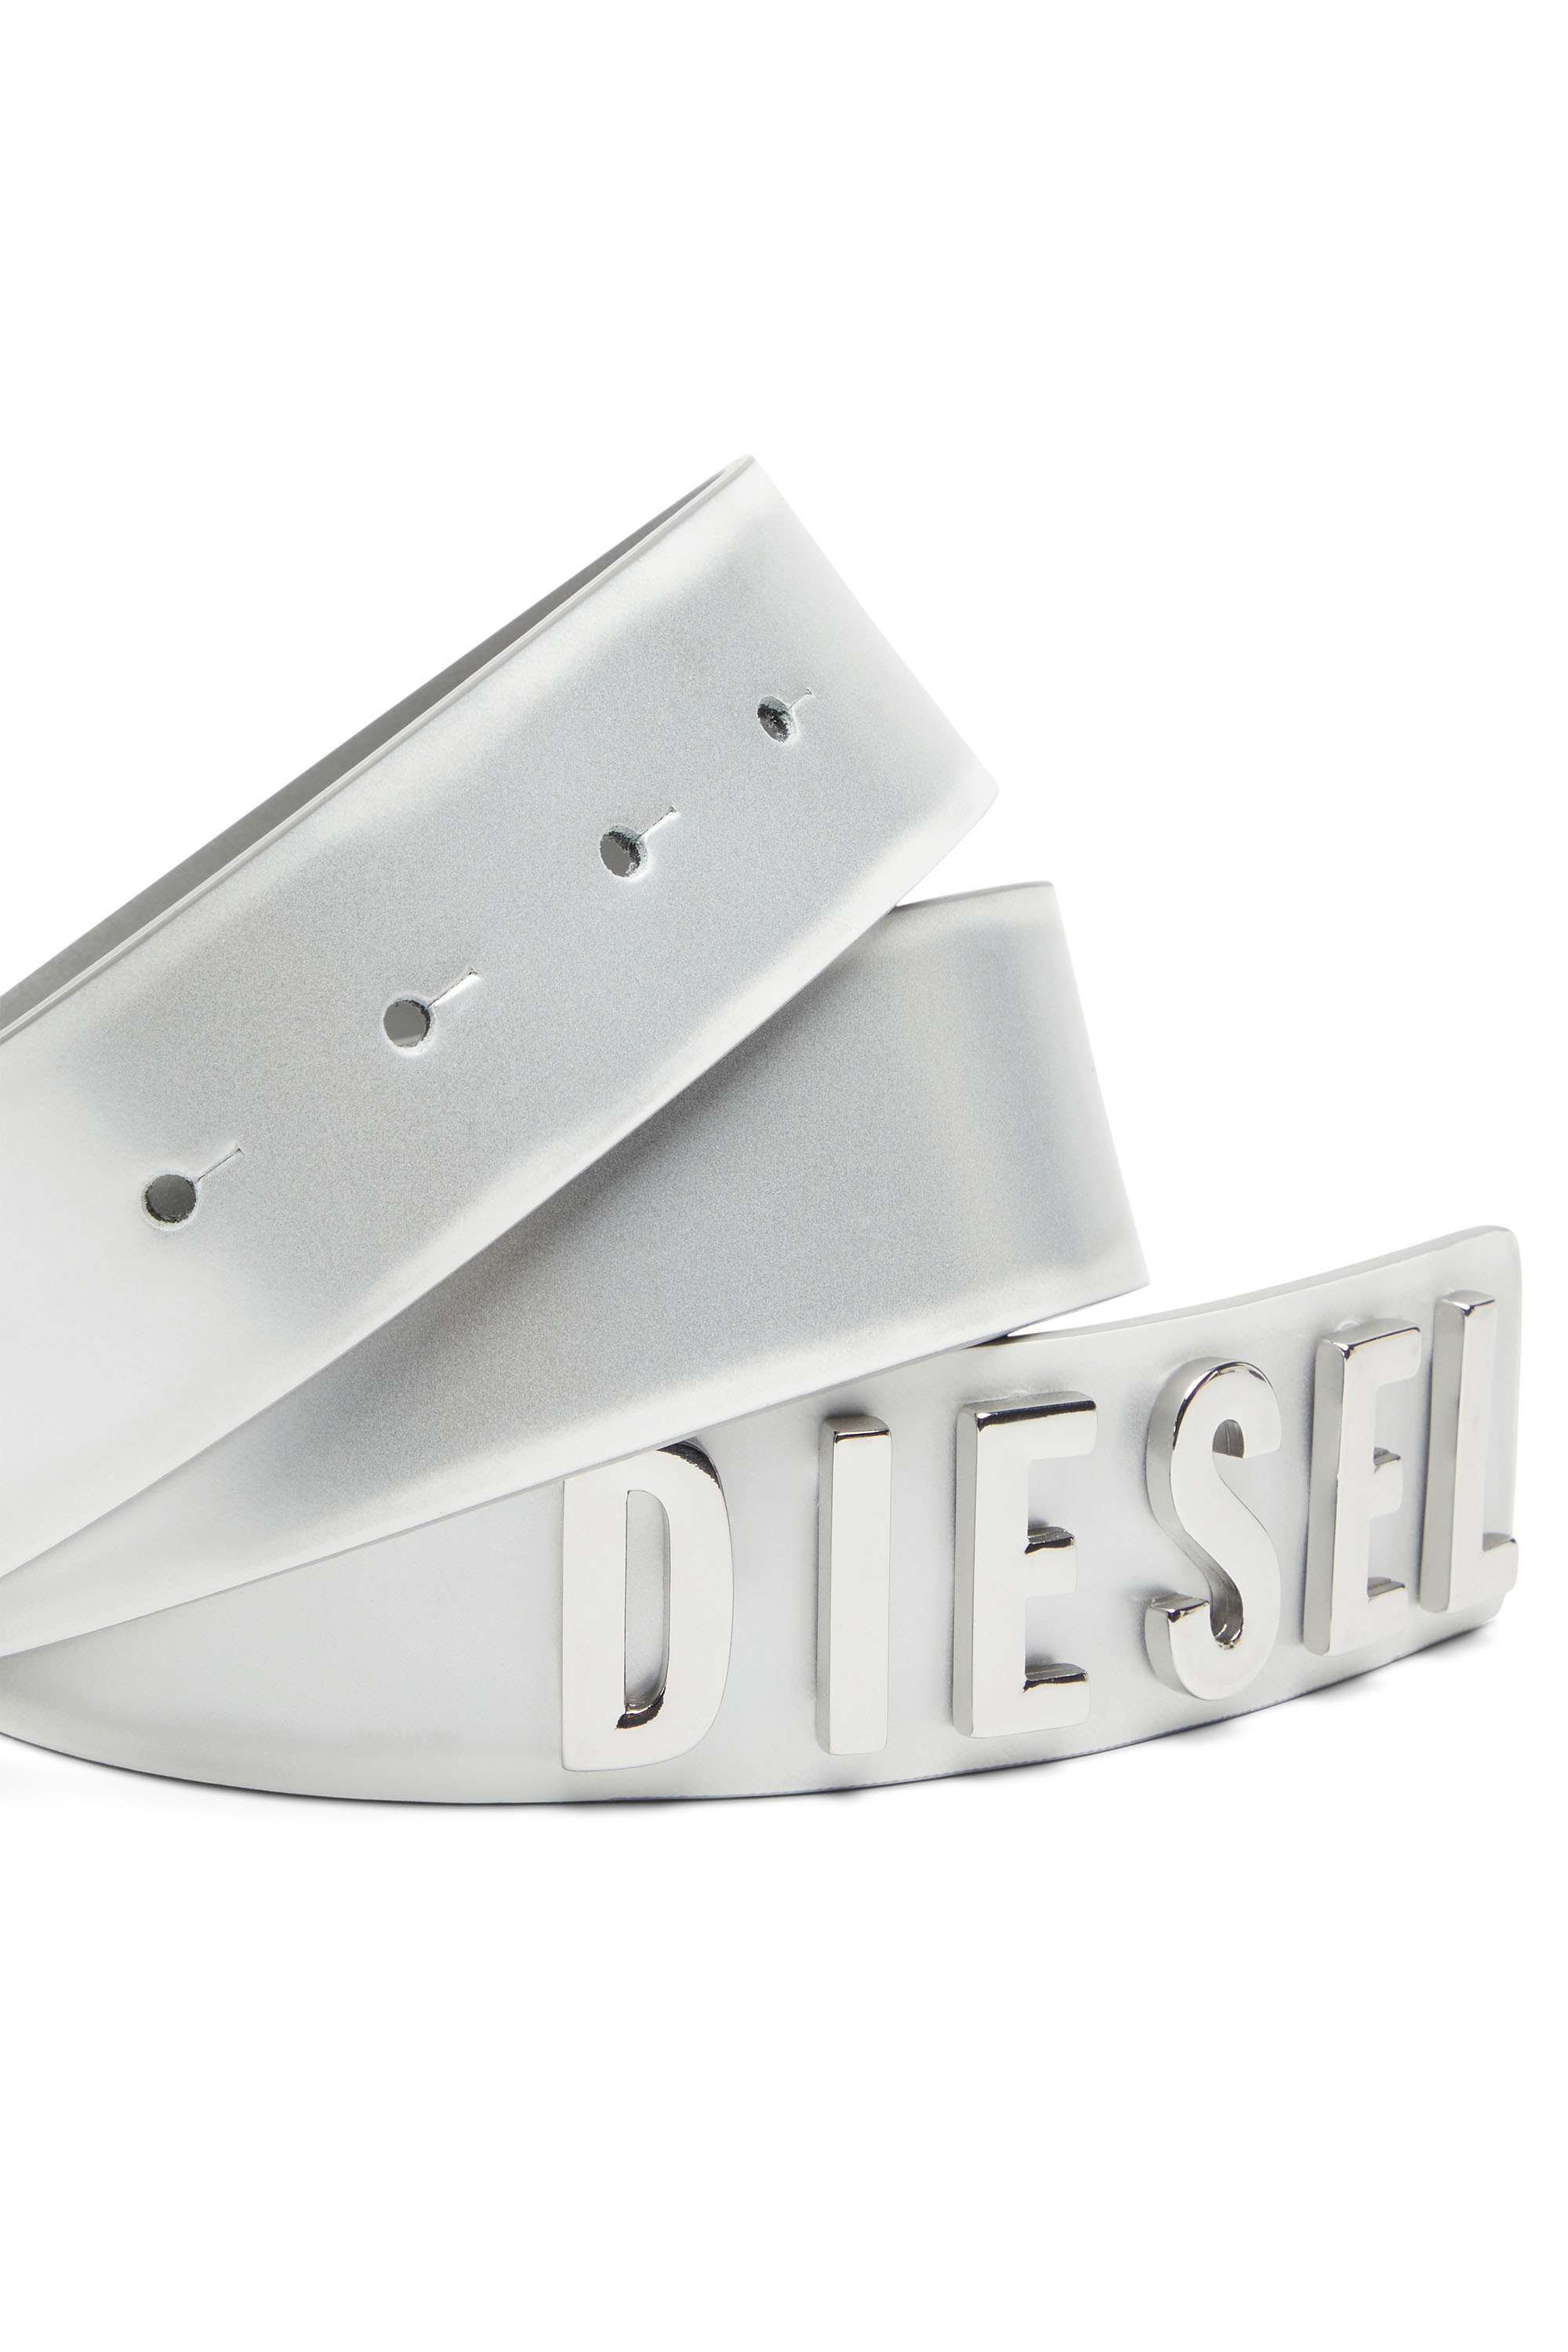 Diesel - B-LETTERS D, Weiß - Image 3